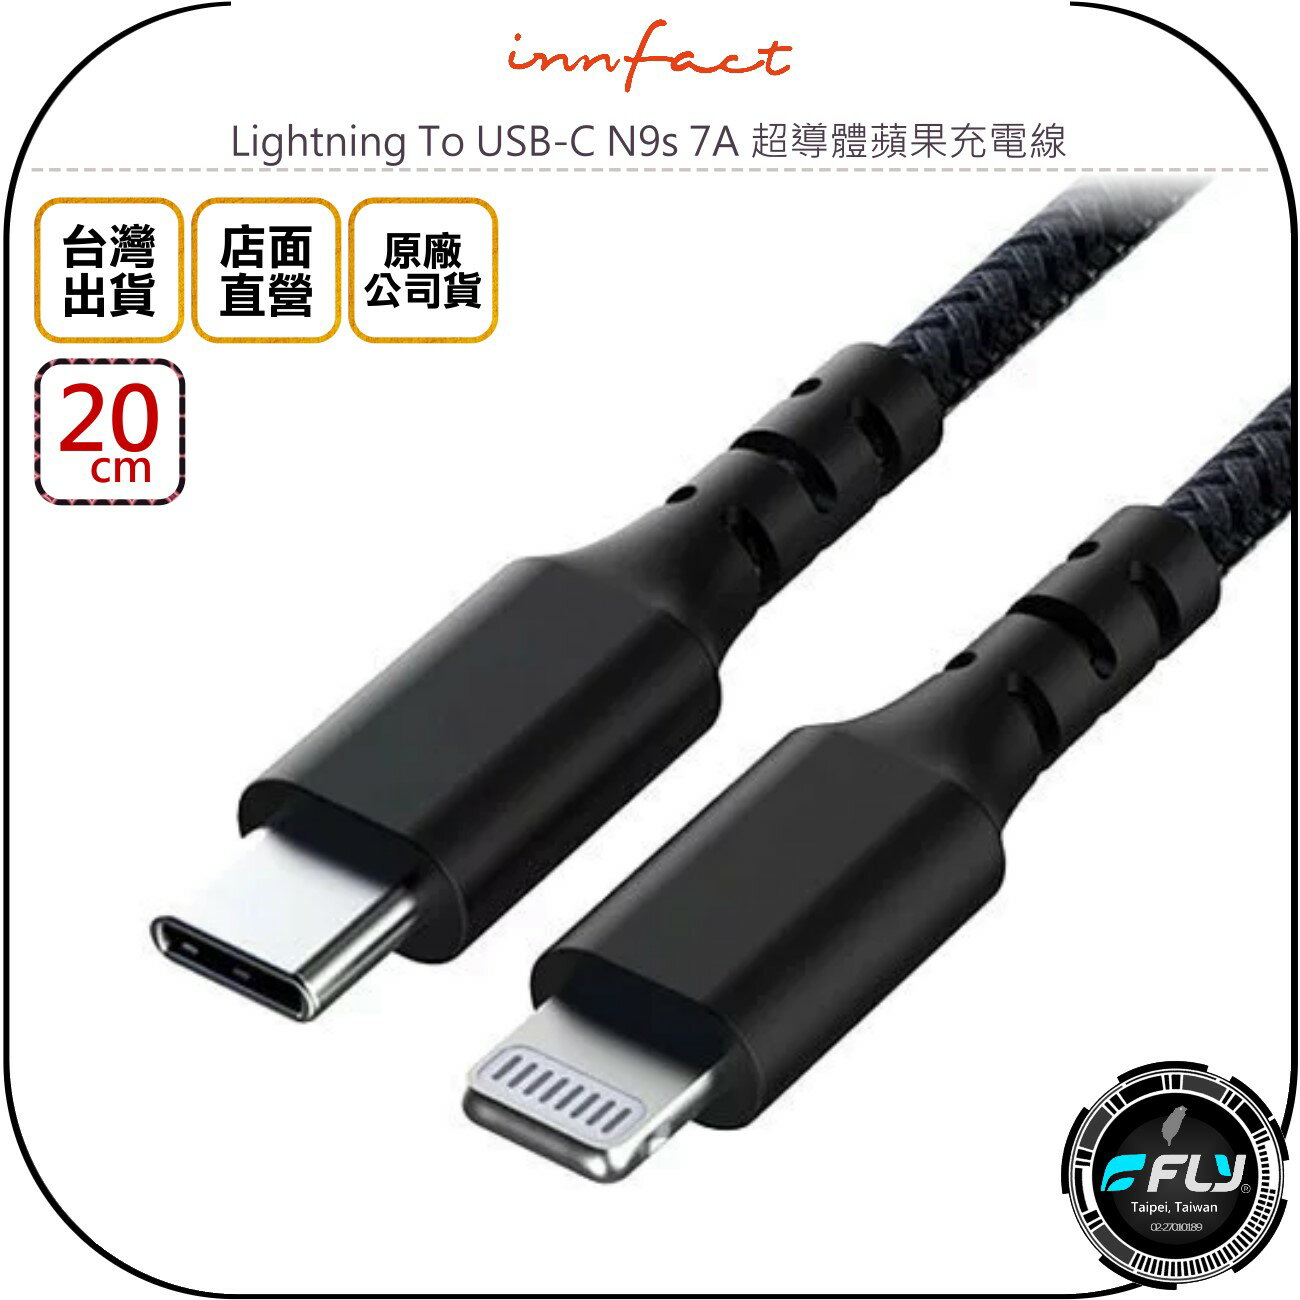 《飛翔無線3C》Innfact Lightning To USB-C N9s 7A 超導體蘋果充電線 20cm◉公司貨